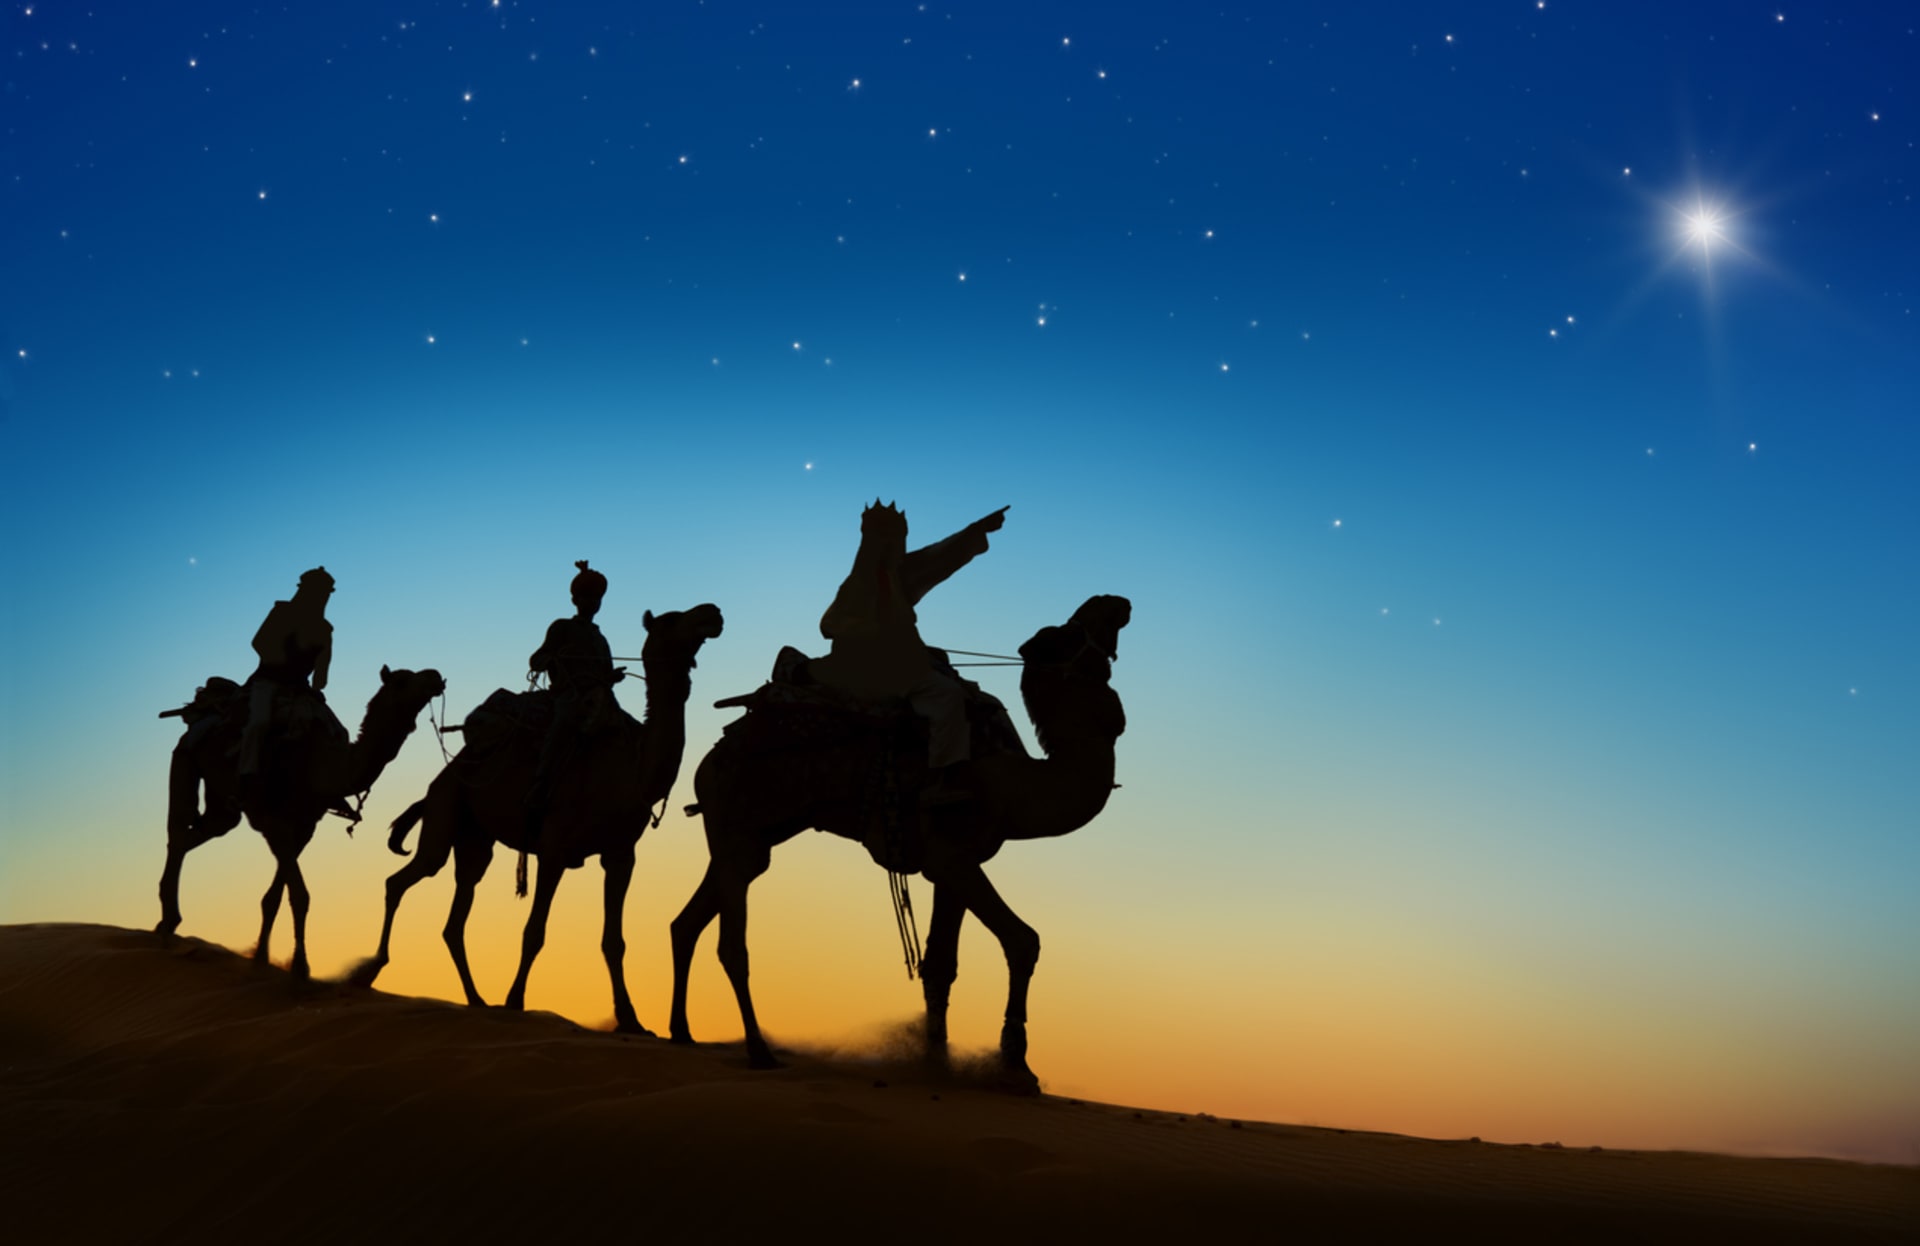 Tři králové sledovali hvězdu na obloze, která je měla zavést za novým vládcem.